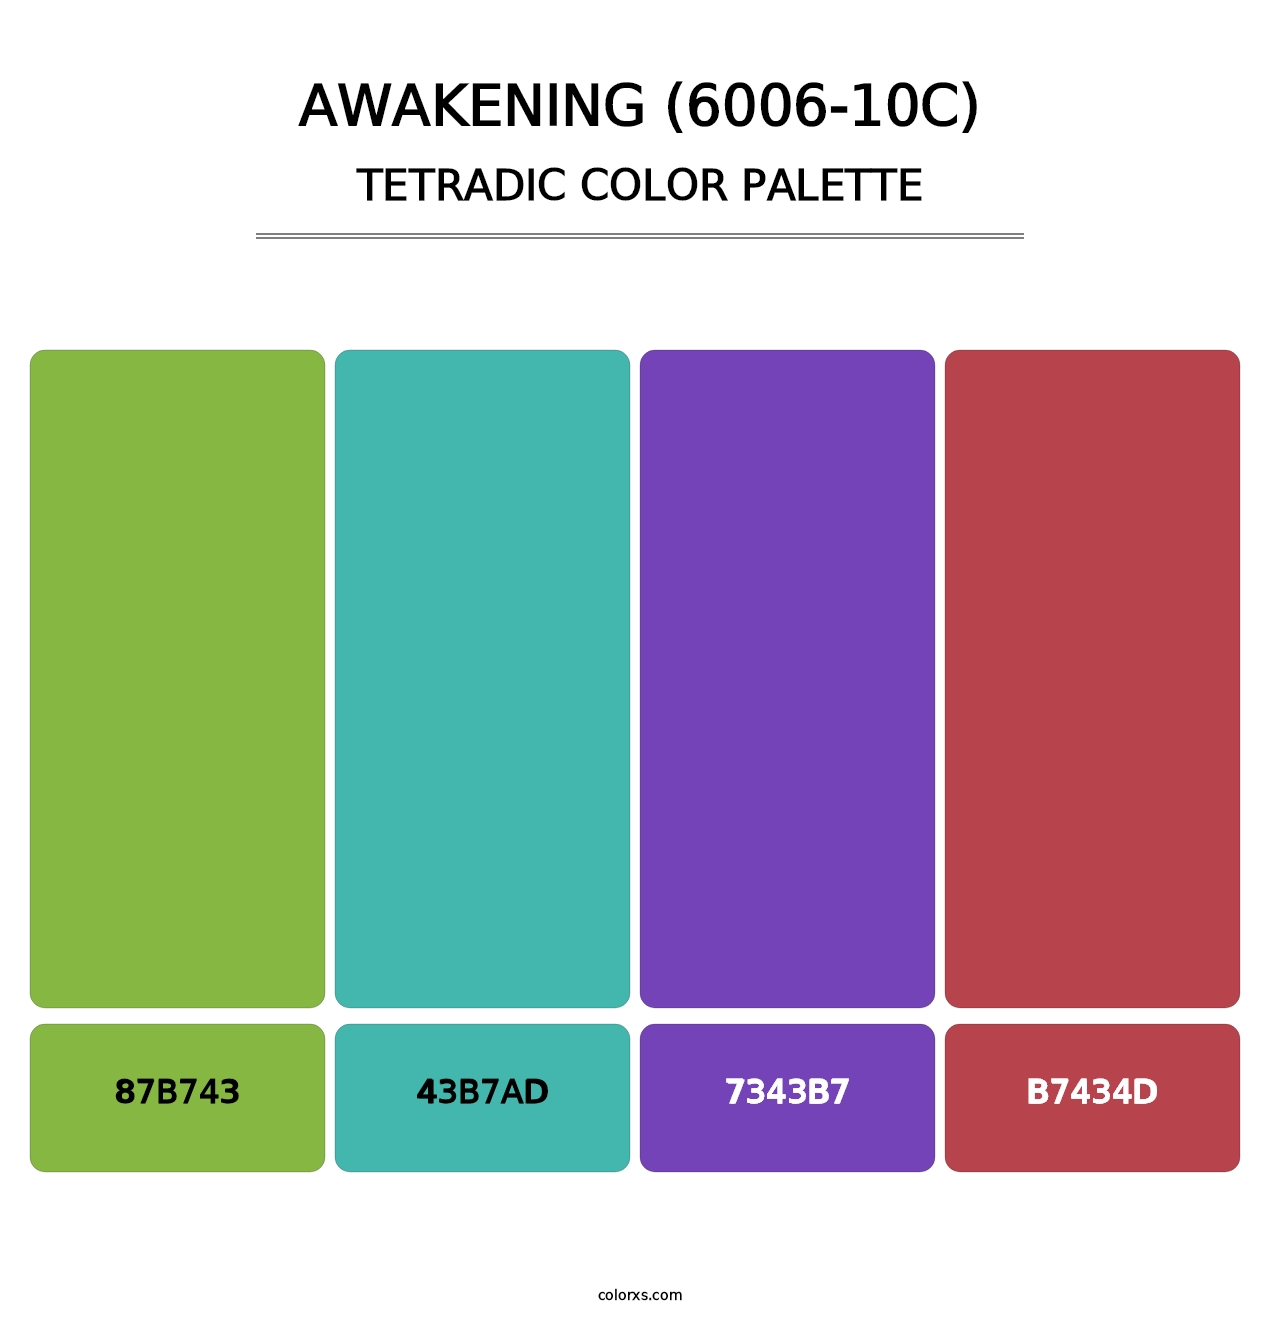 Awakening (6006-10C) - Tetradic Color Palette